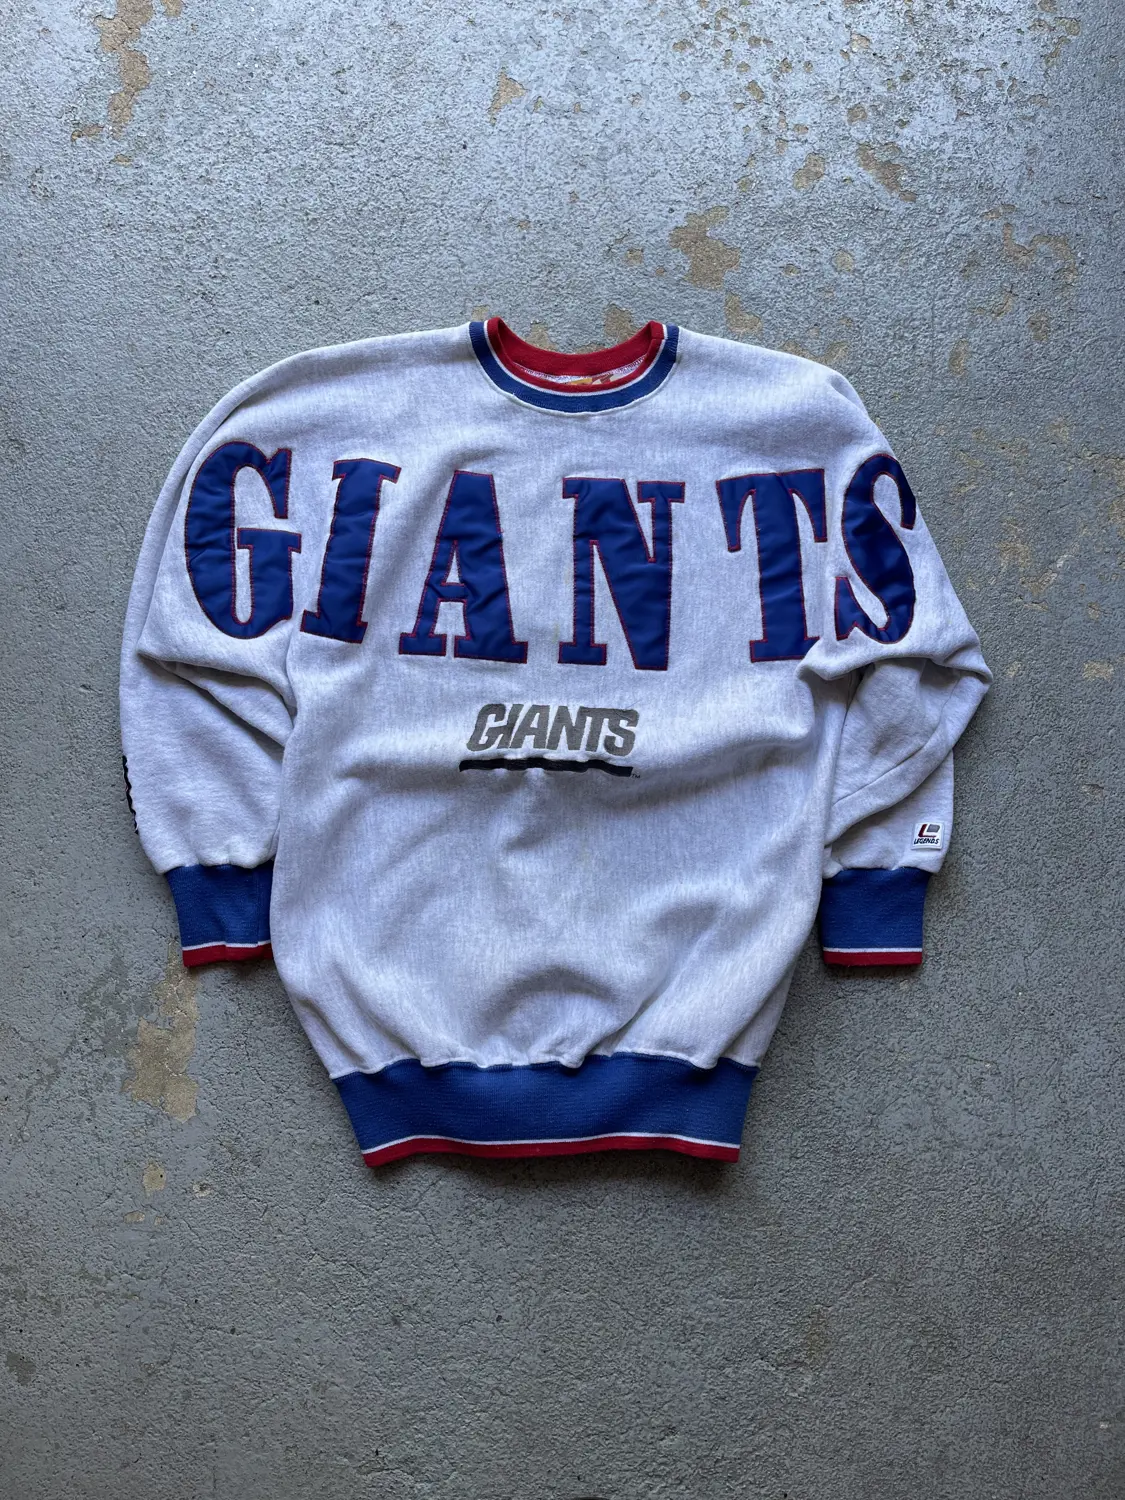 Vintage Giants Legends Crew